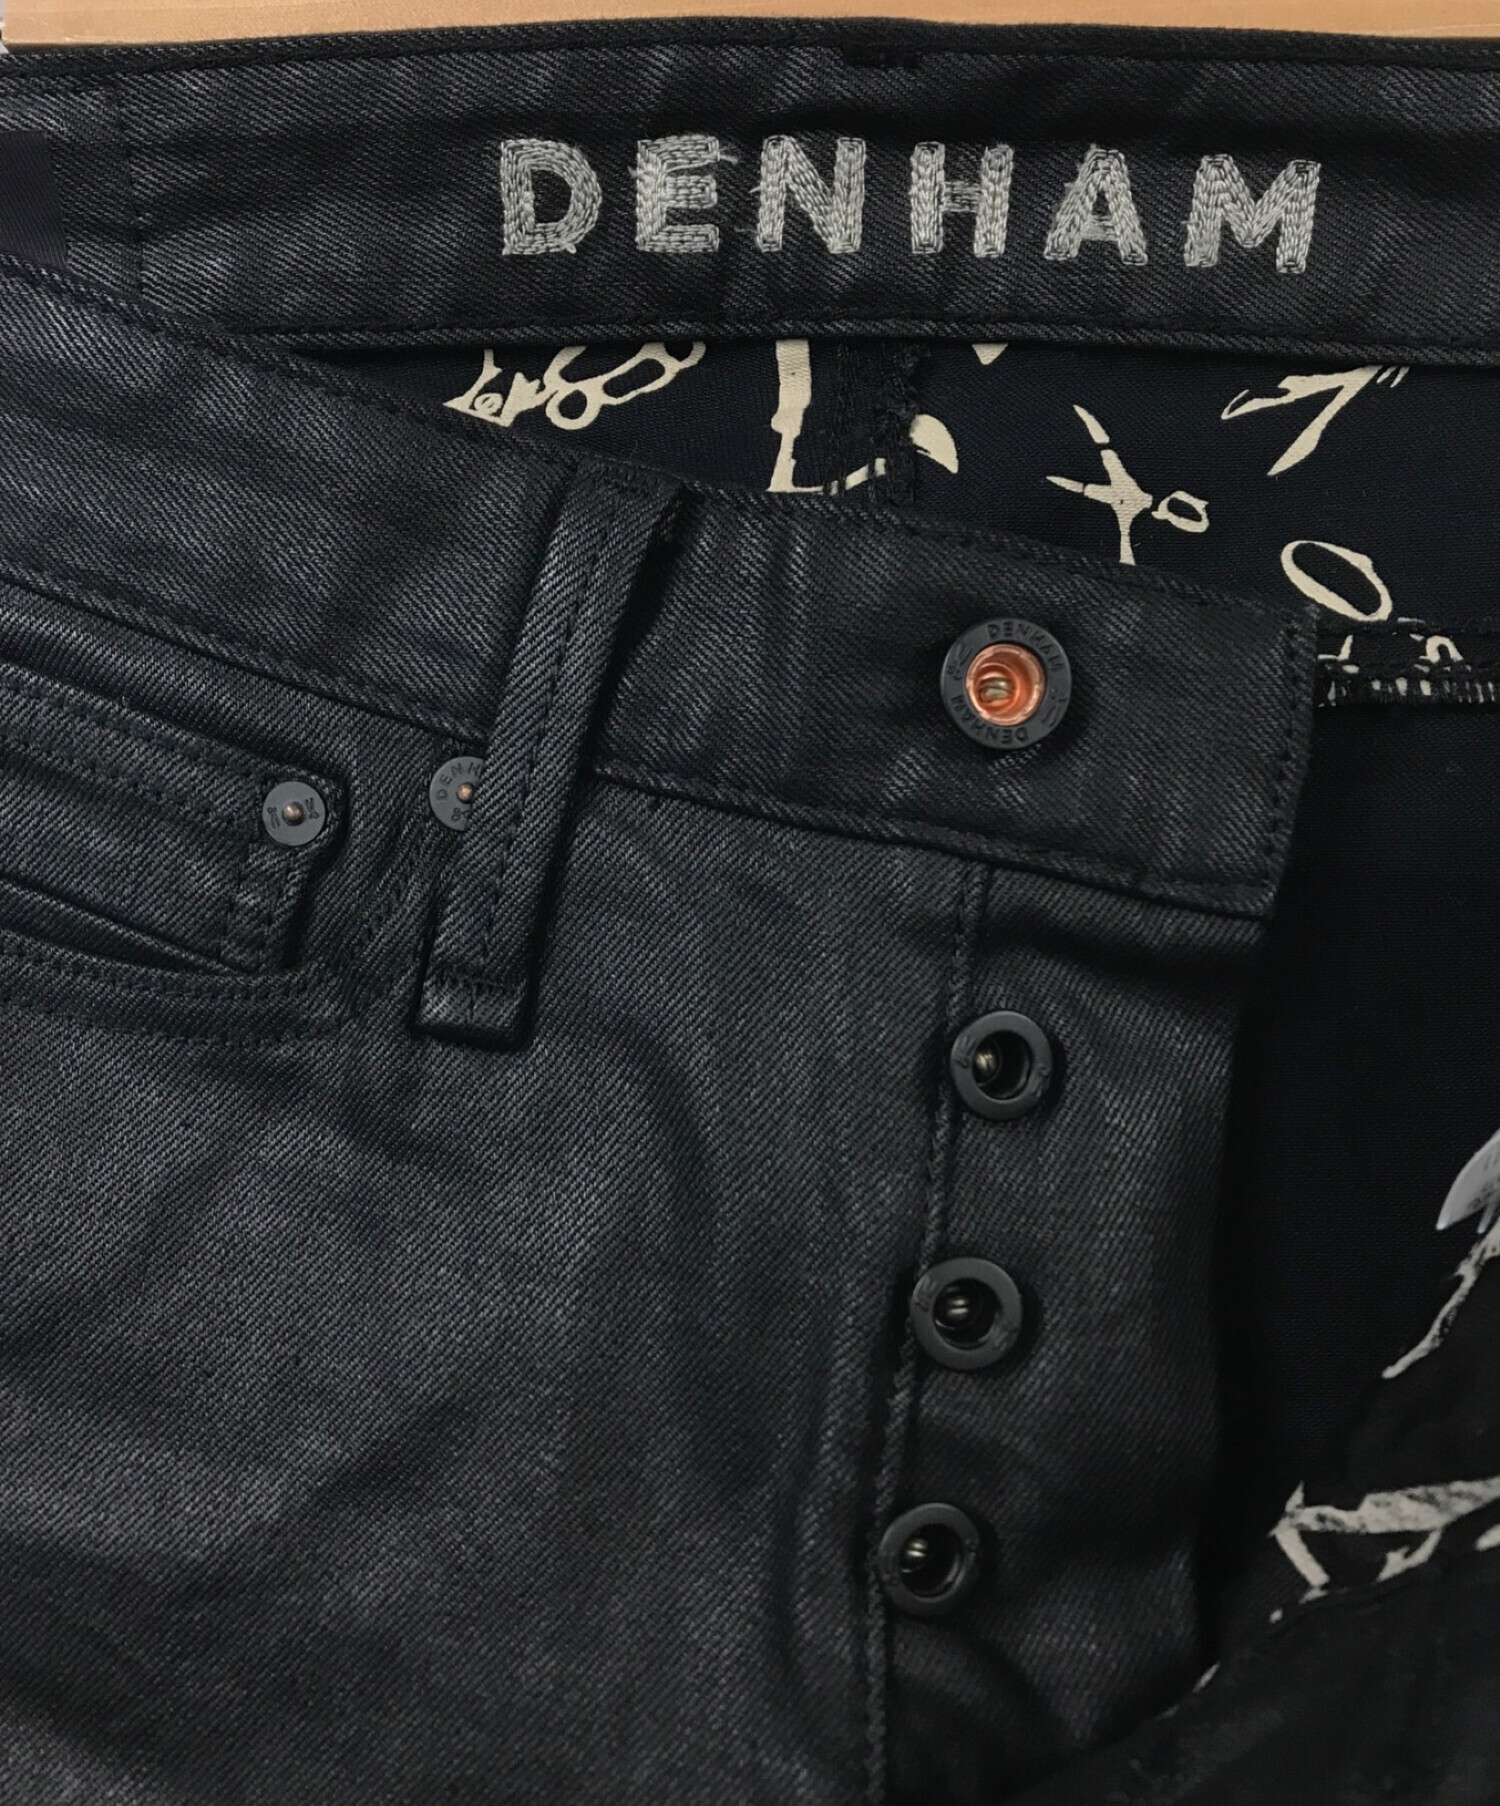 Denham (デンハム) MERCURY BLACK SKINNY FIT ブラック サイズ:27